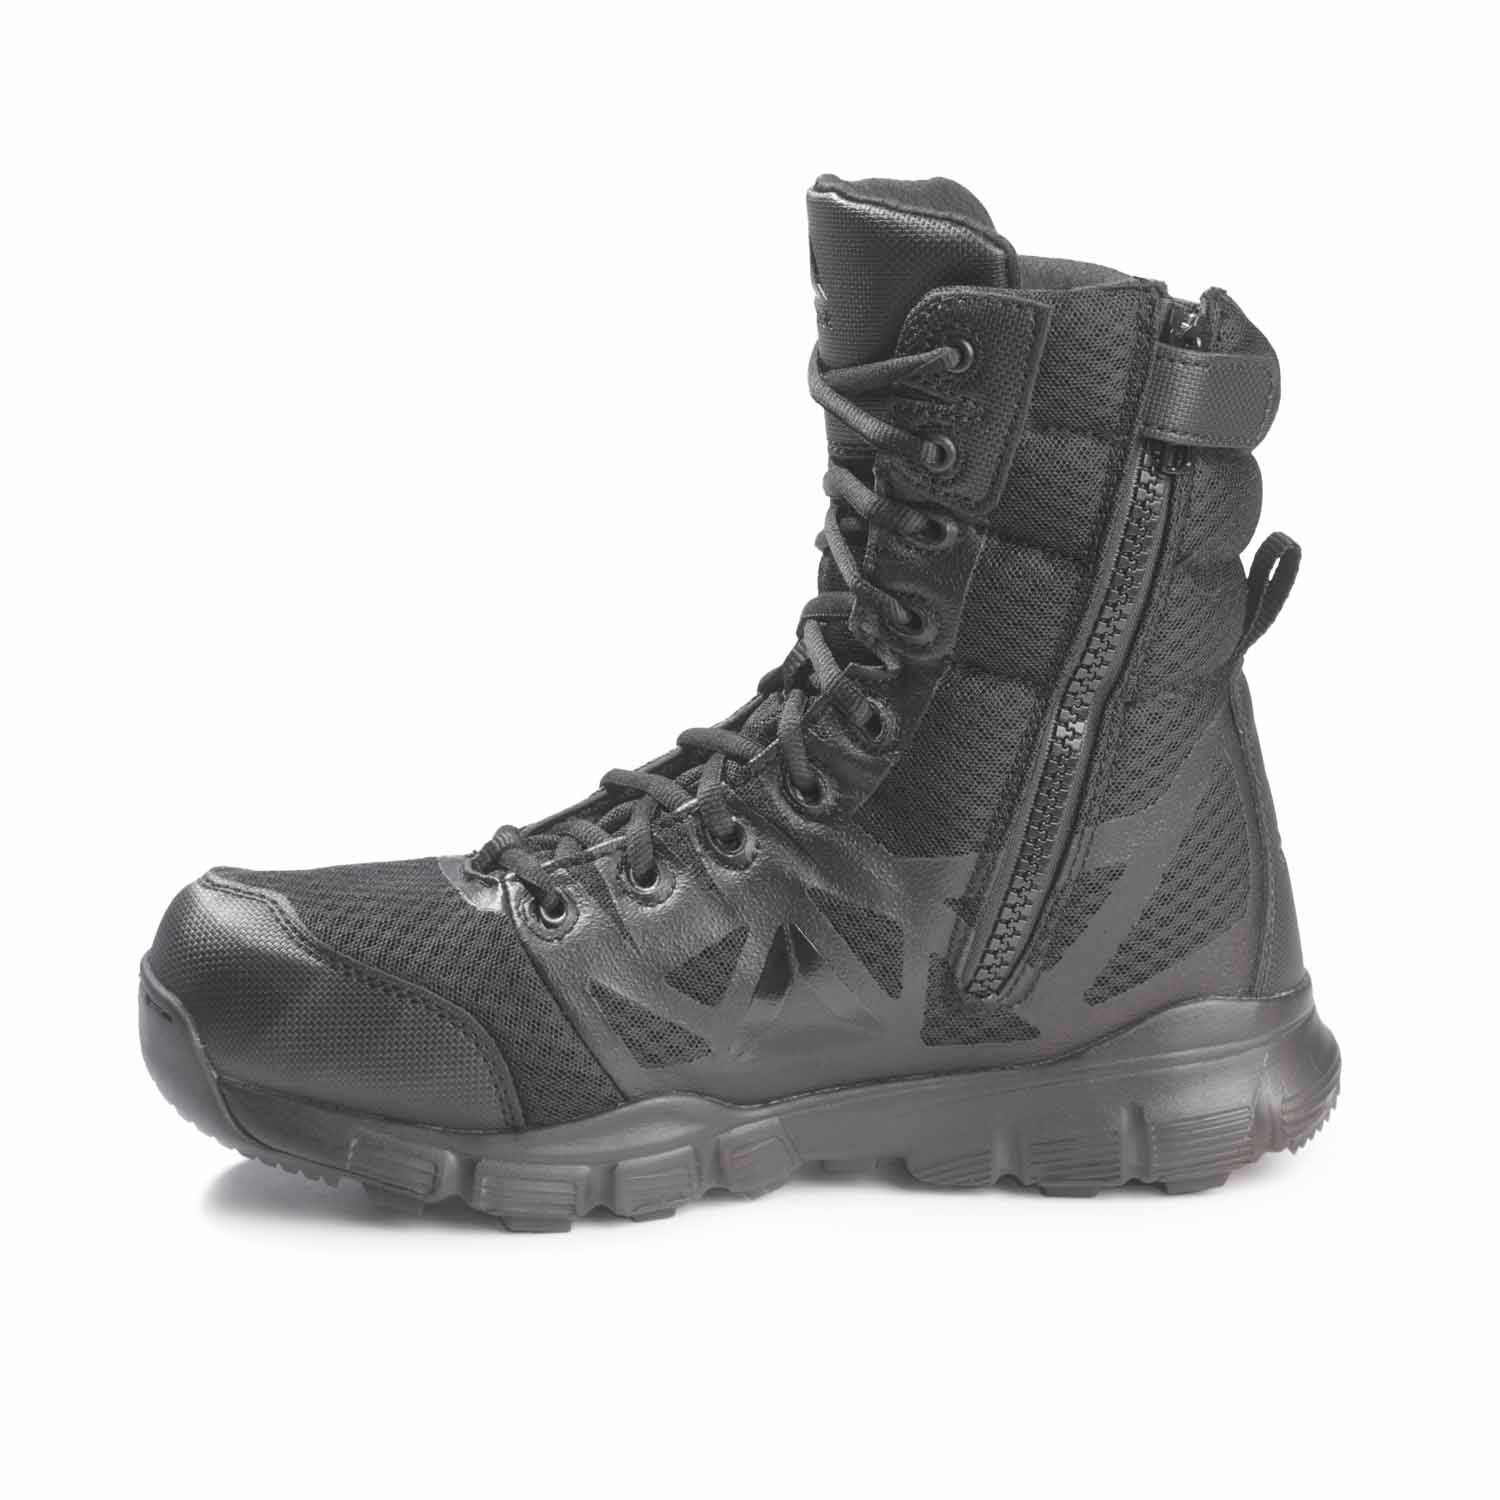 reebok men's dauntless 8 in tactical boots